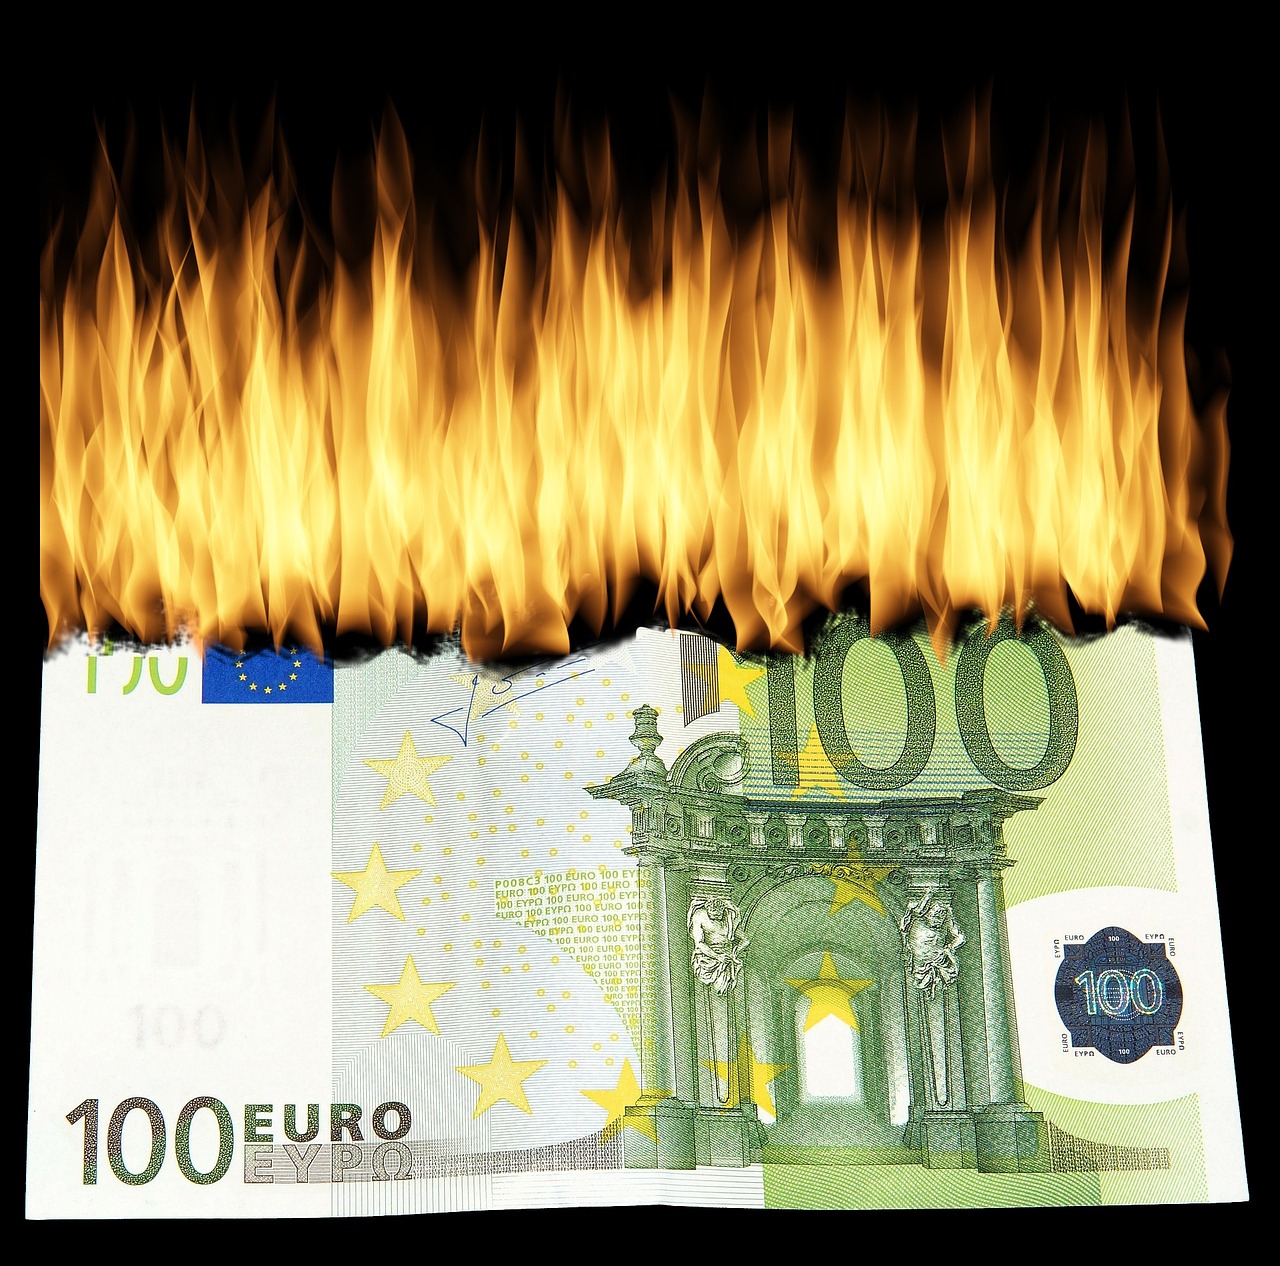 burn money burn geldschein destroy money free photo